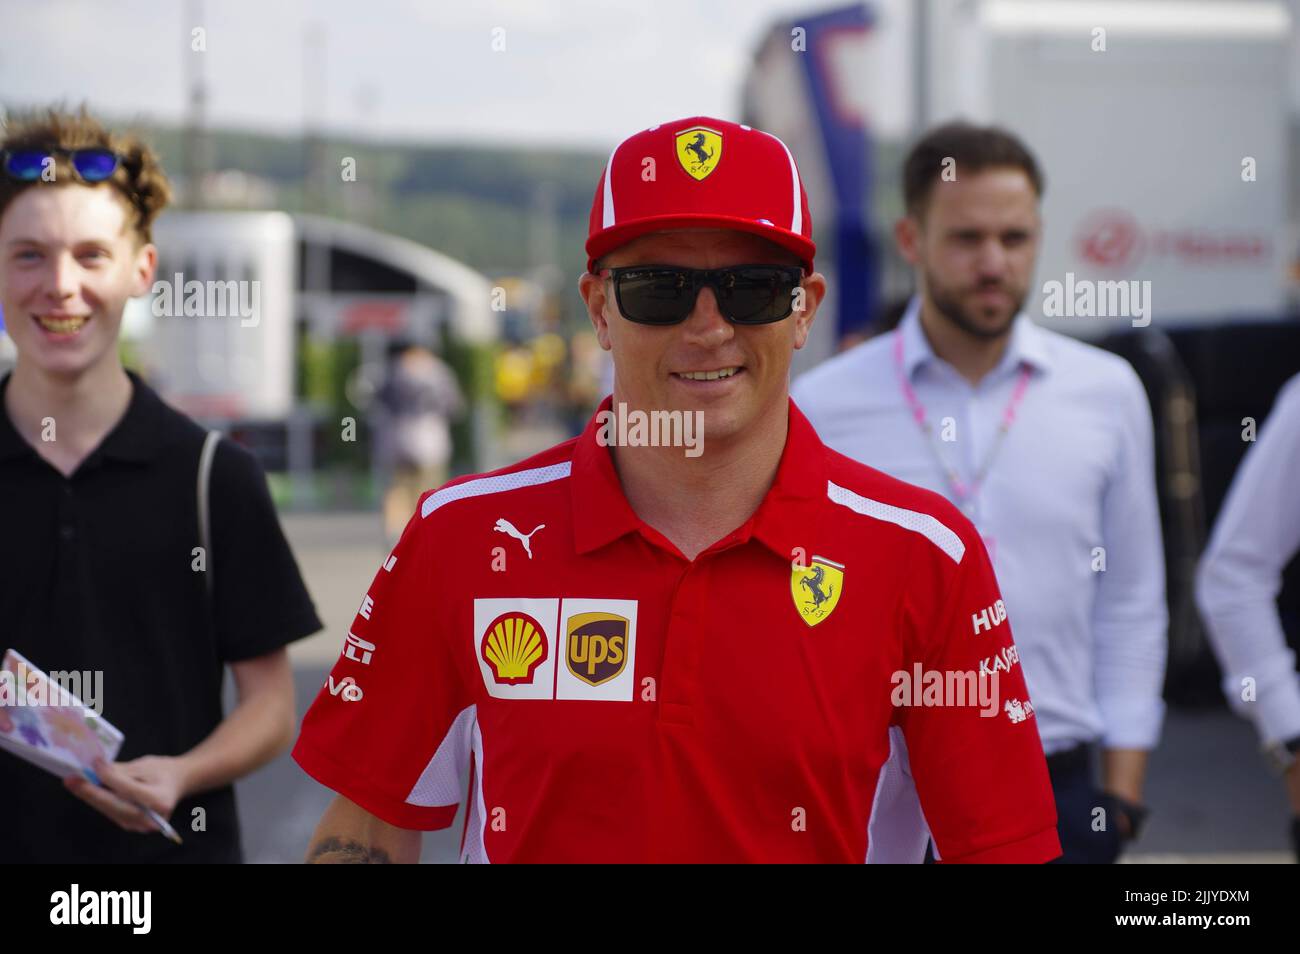 Kimi Raikkonen - Scuderia Ferrari Formula 1 Driver - Belgian Grand Prix 2018 Stock Photo